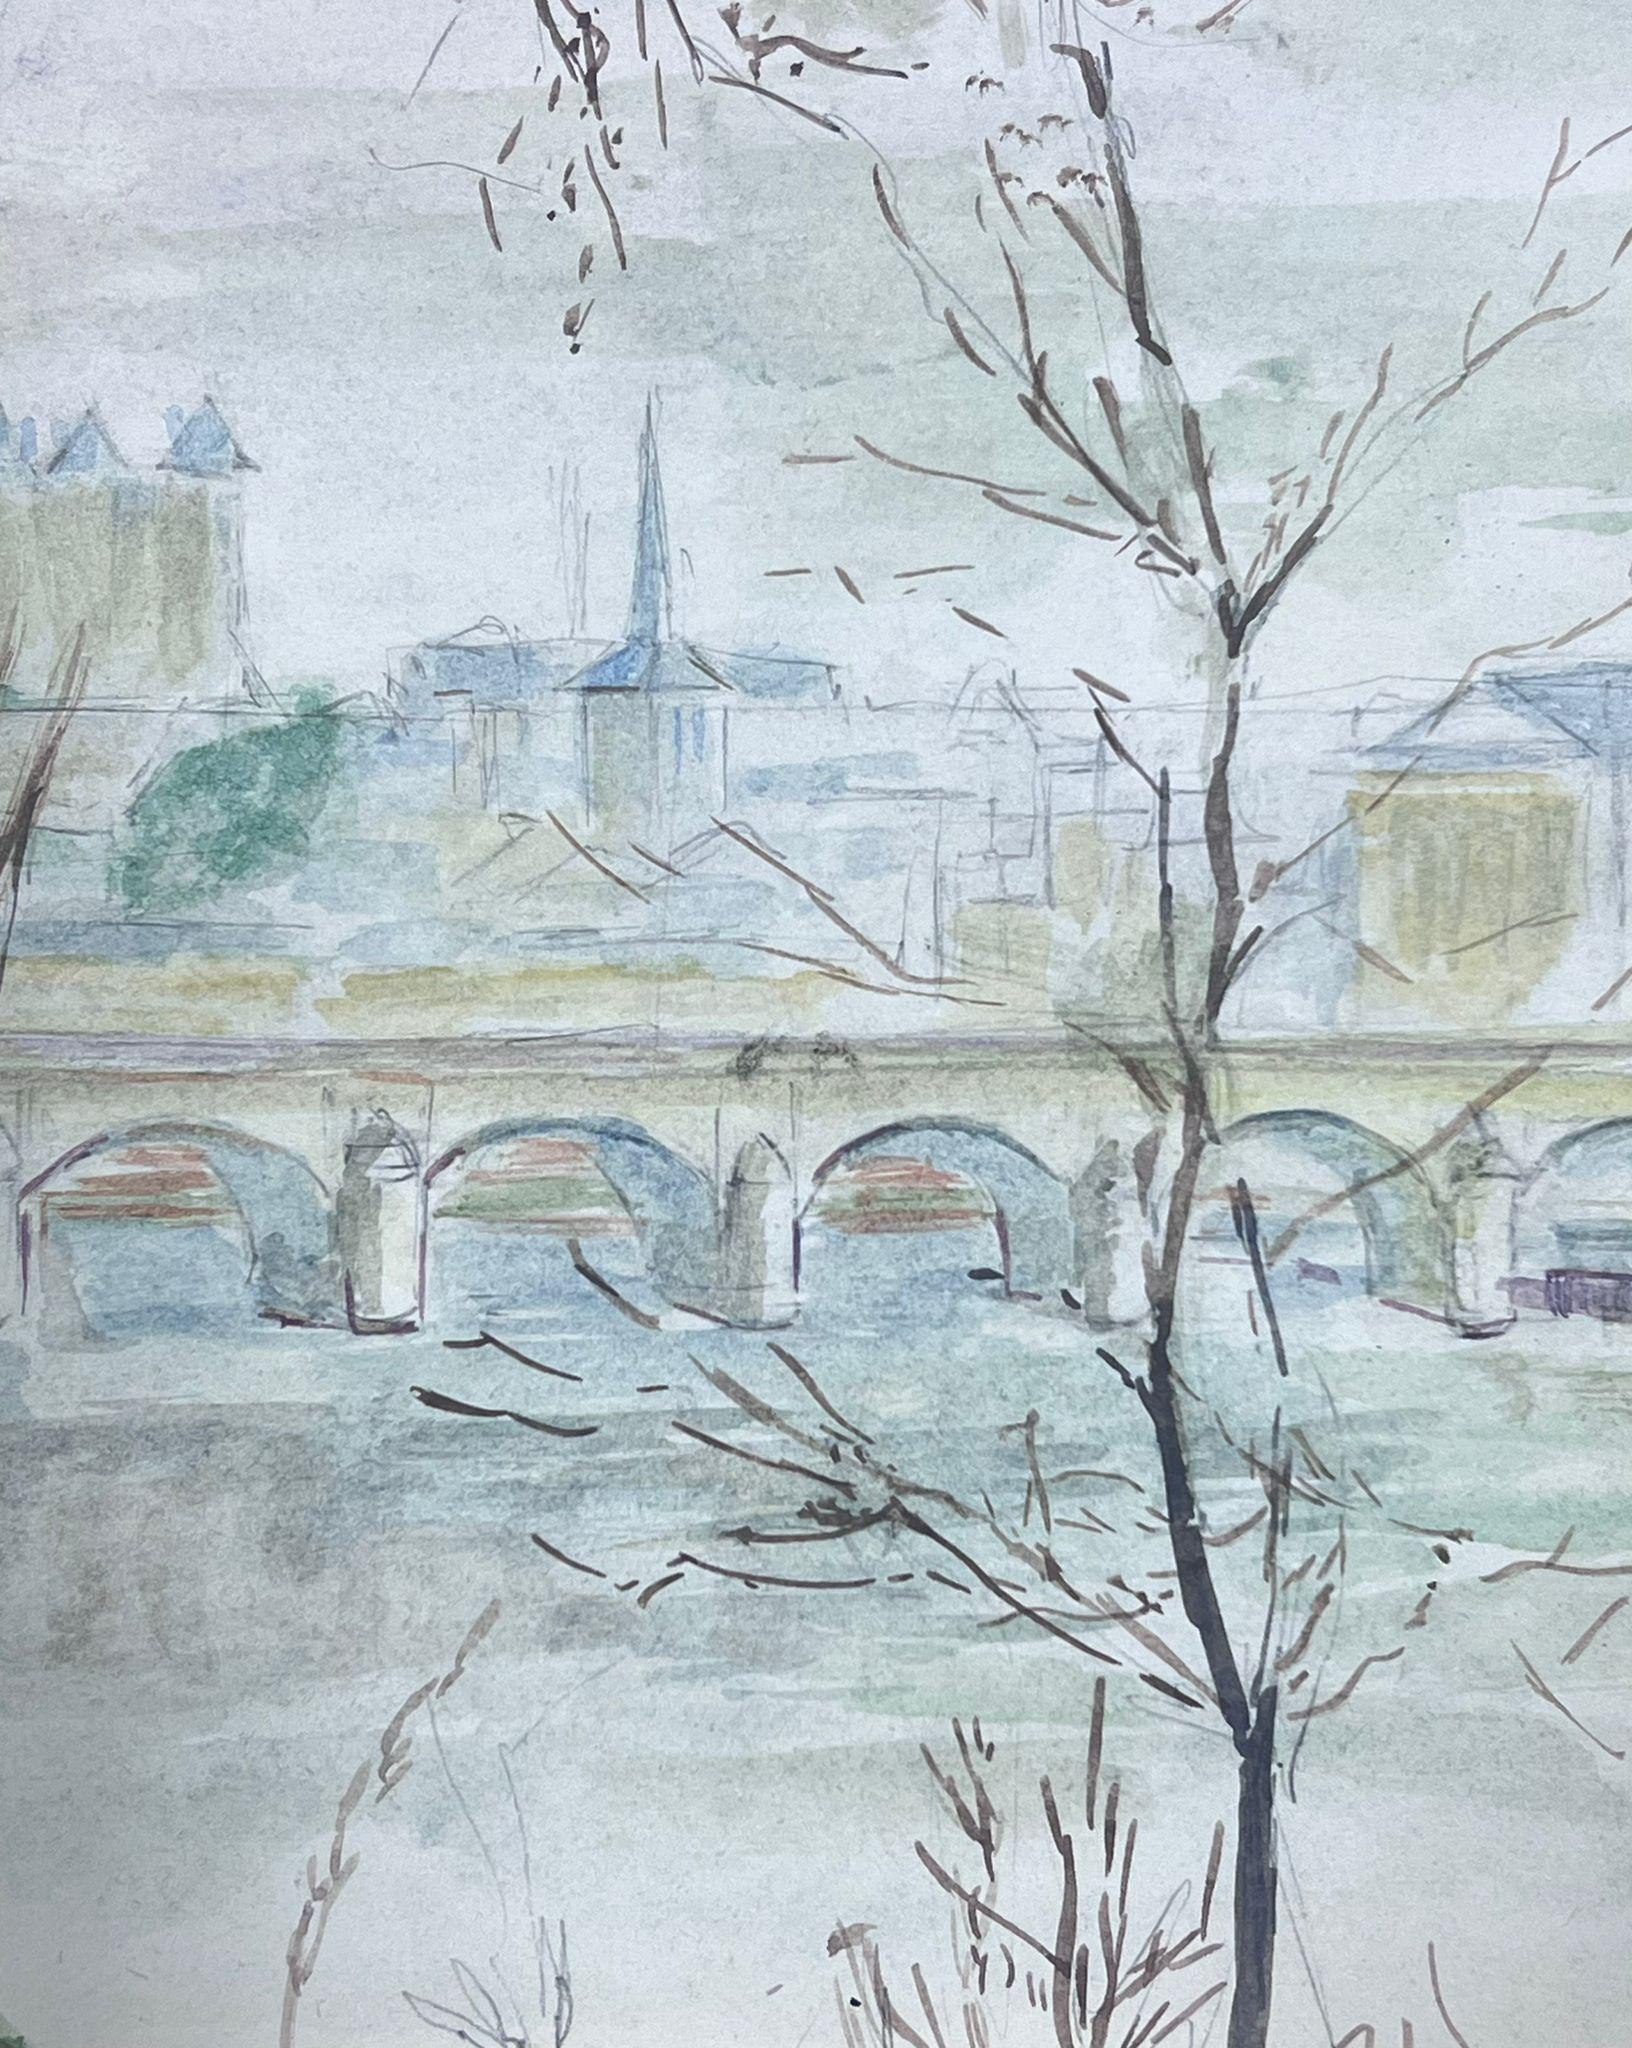 Aquarelle post-impressionniste française du 20e siècle représentant une vue sur la rivière de la ville française - Post-impressionnisme Art par Guy Nicod